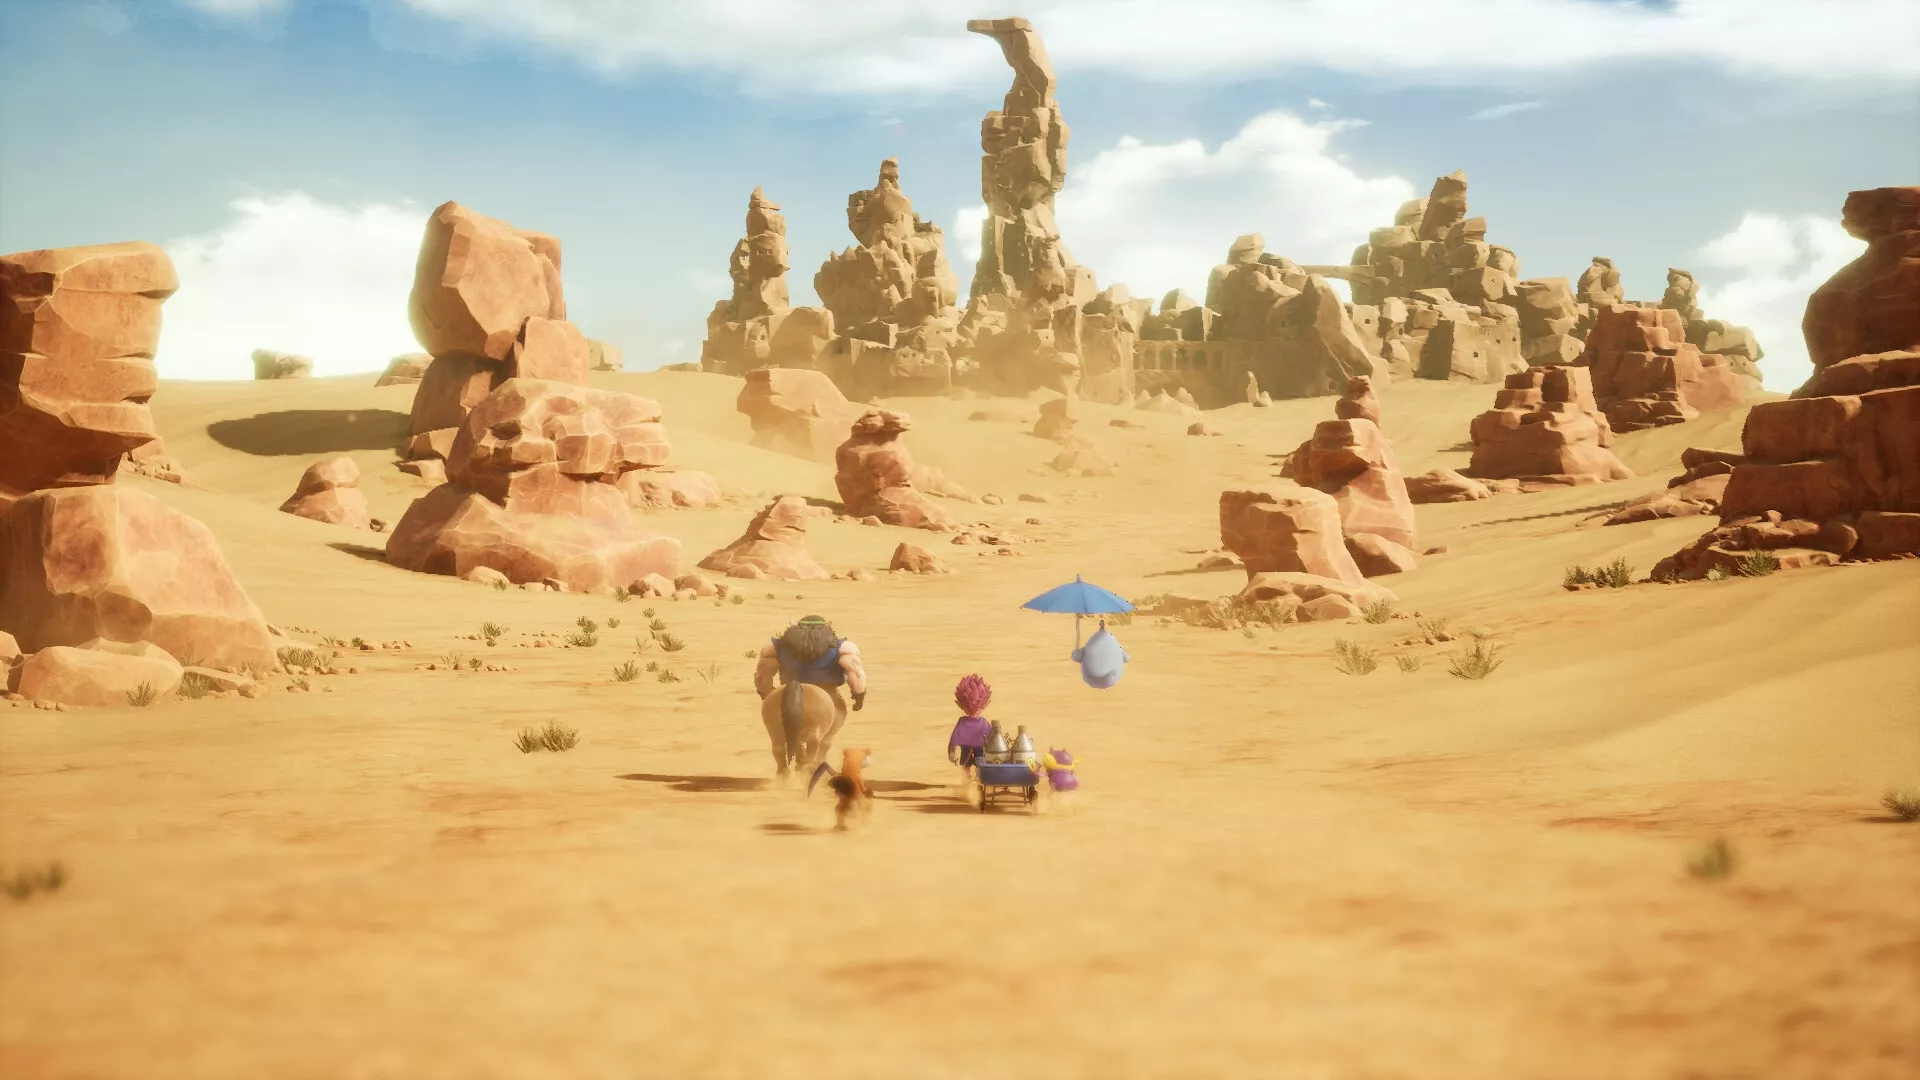 Neuer Trailer für Sand Land veröffentlicht Heropic